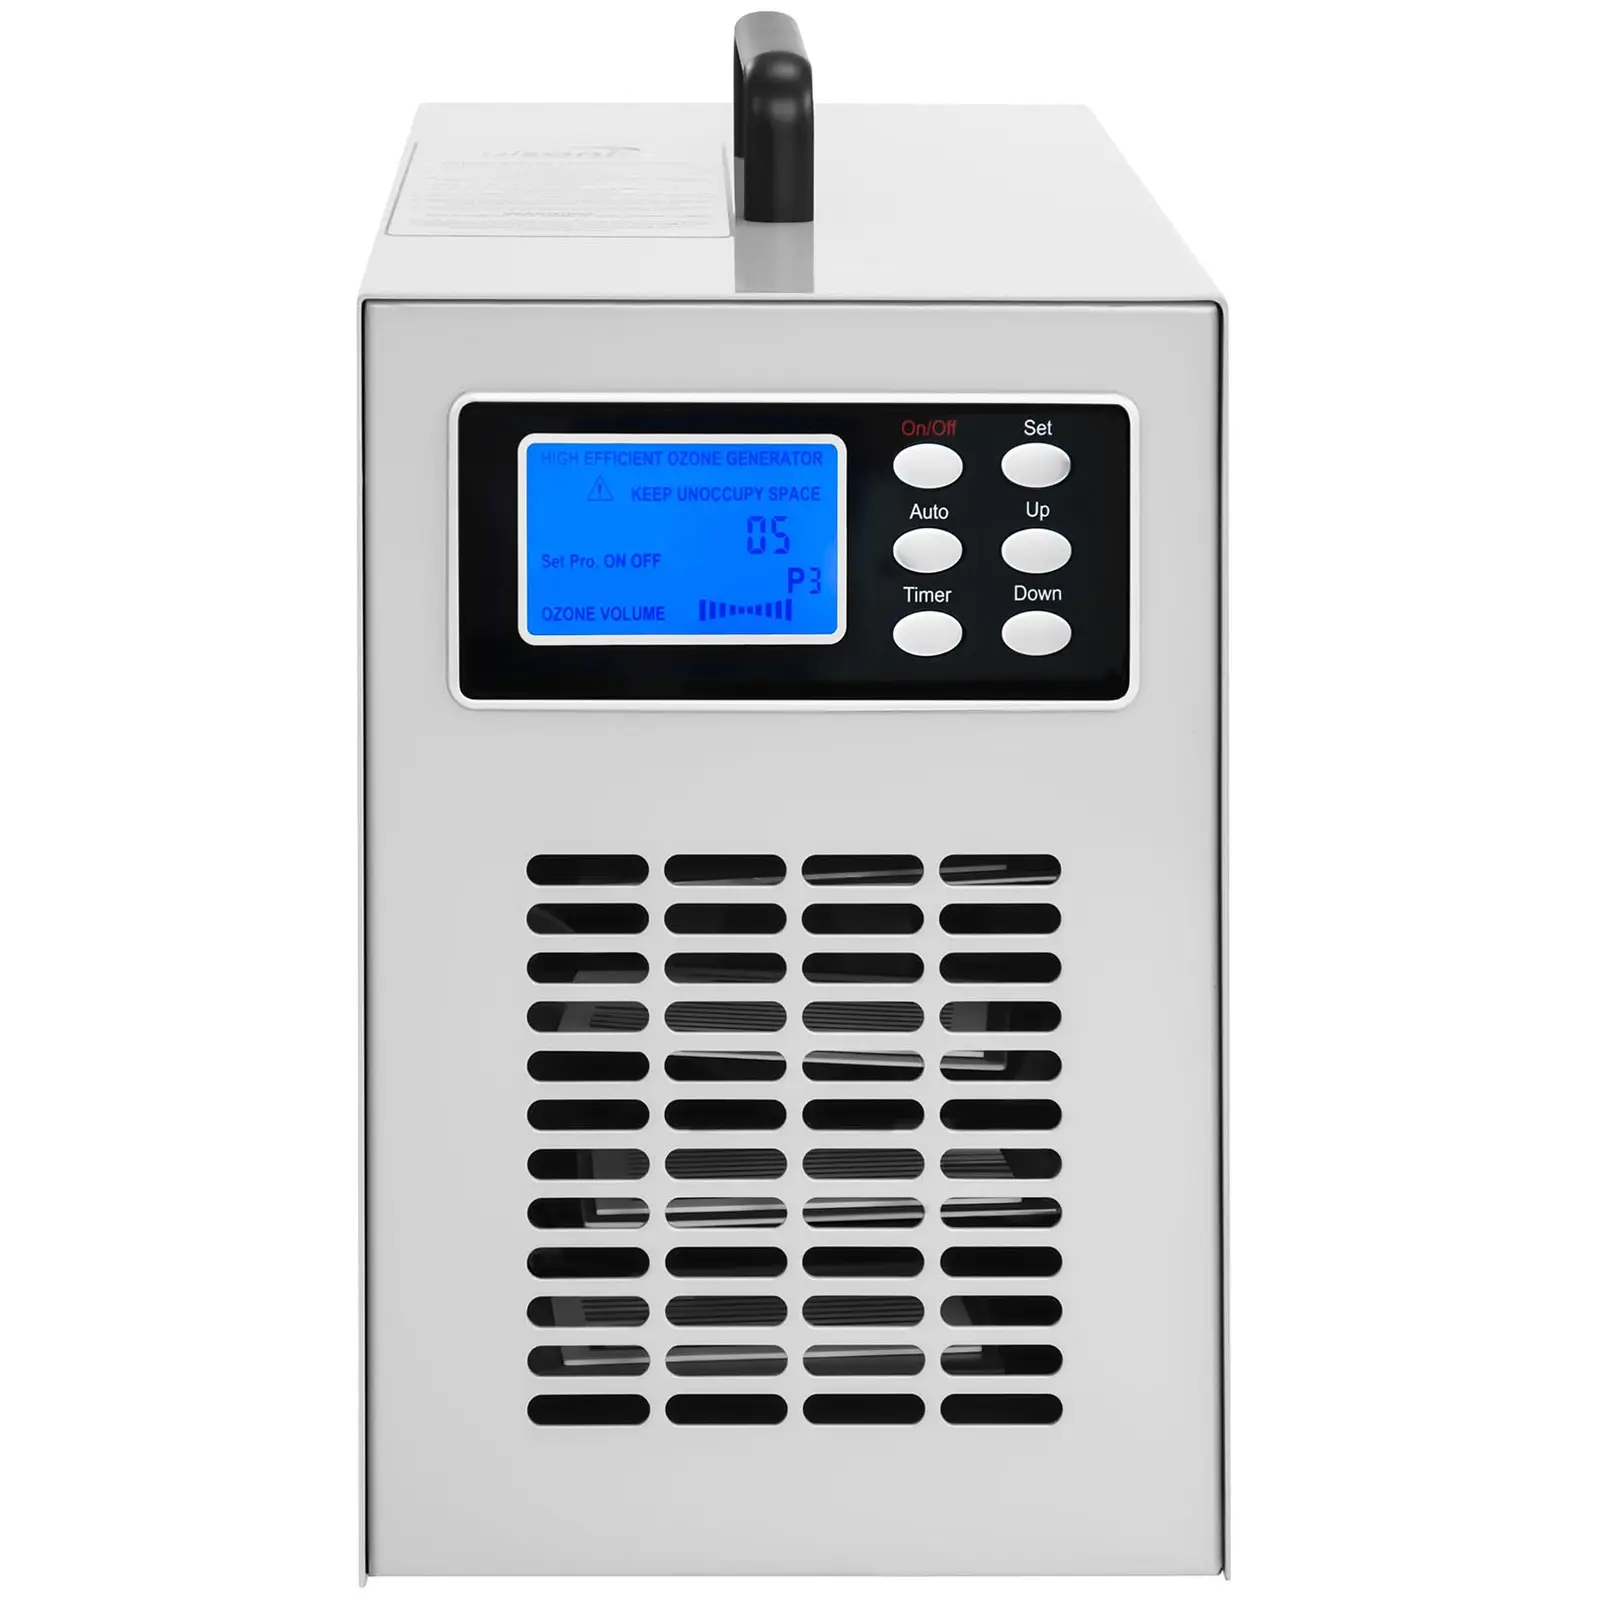 Ozongenerator - 20.000 mg/h - 205 Watt - digital